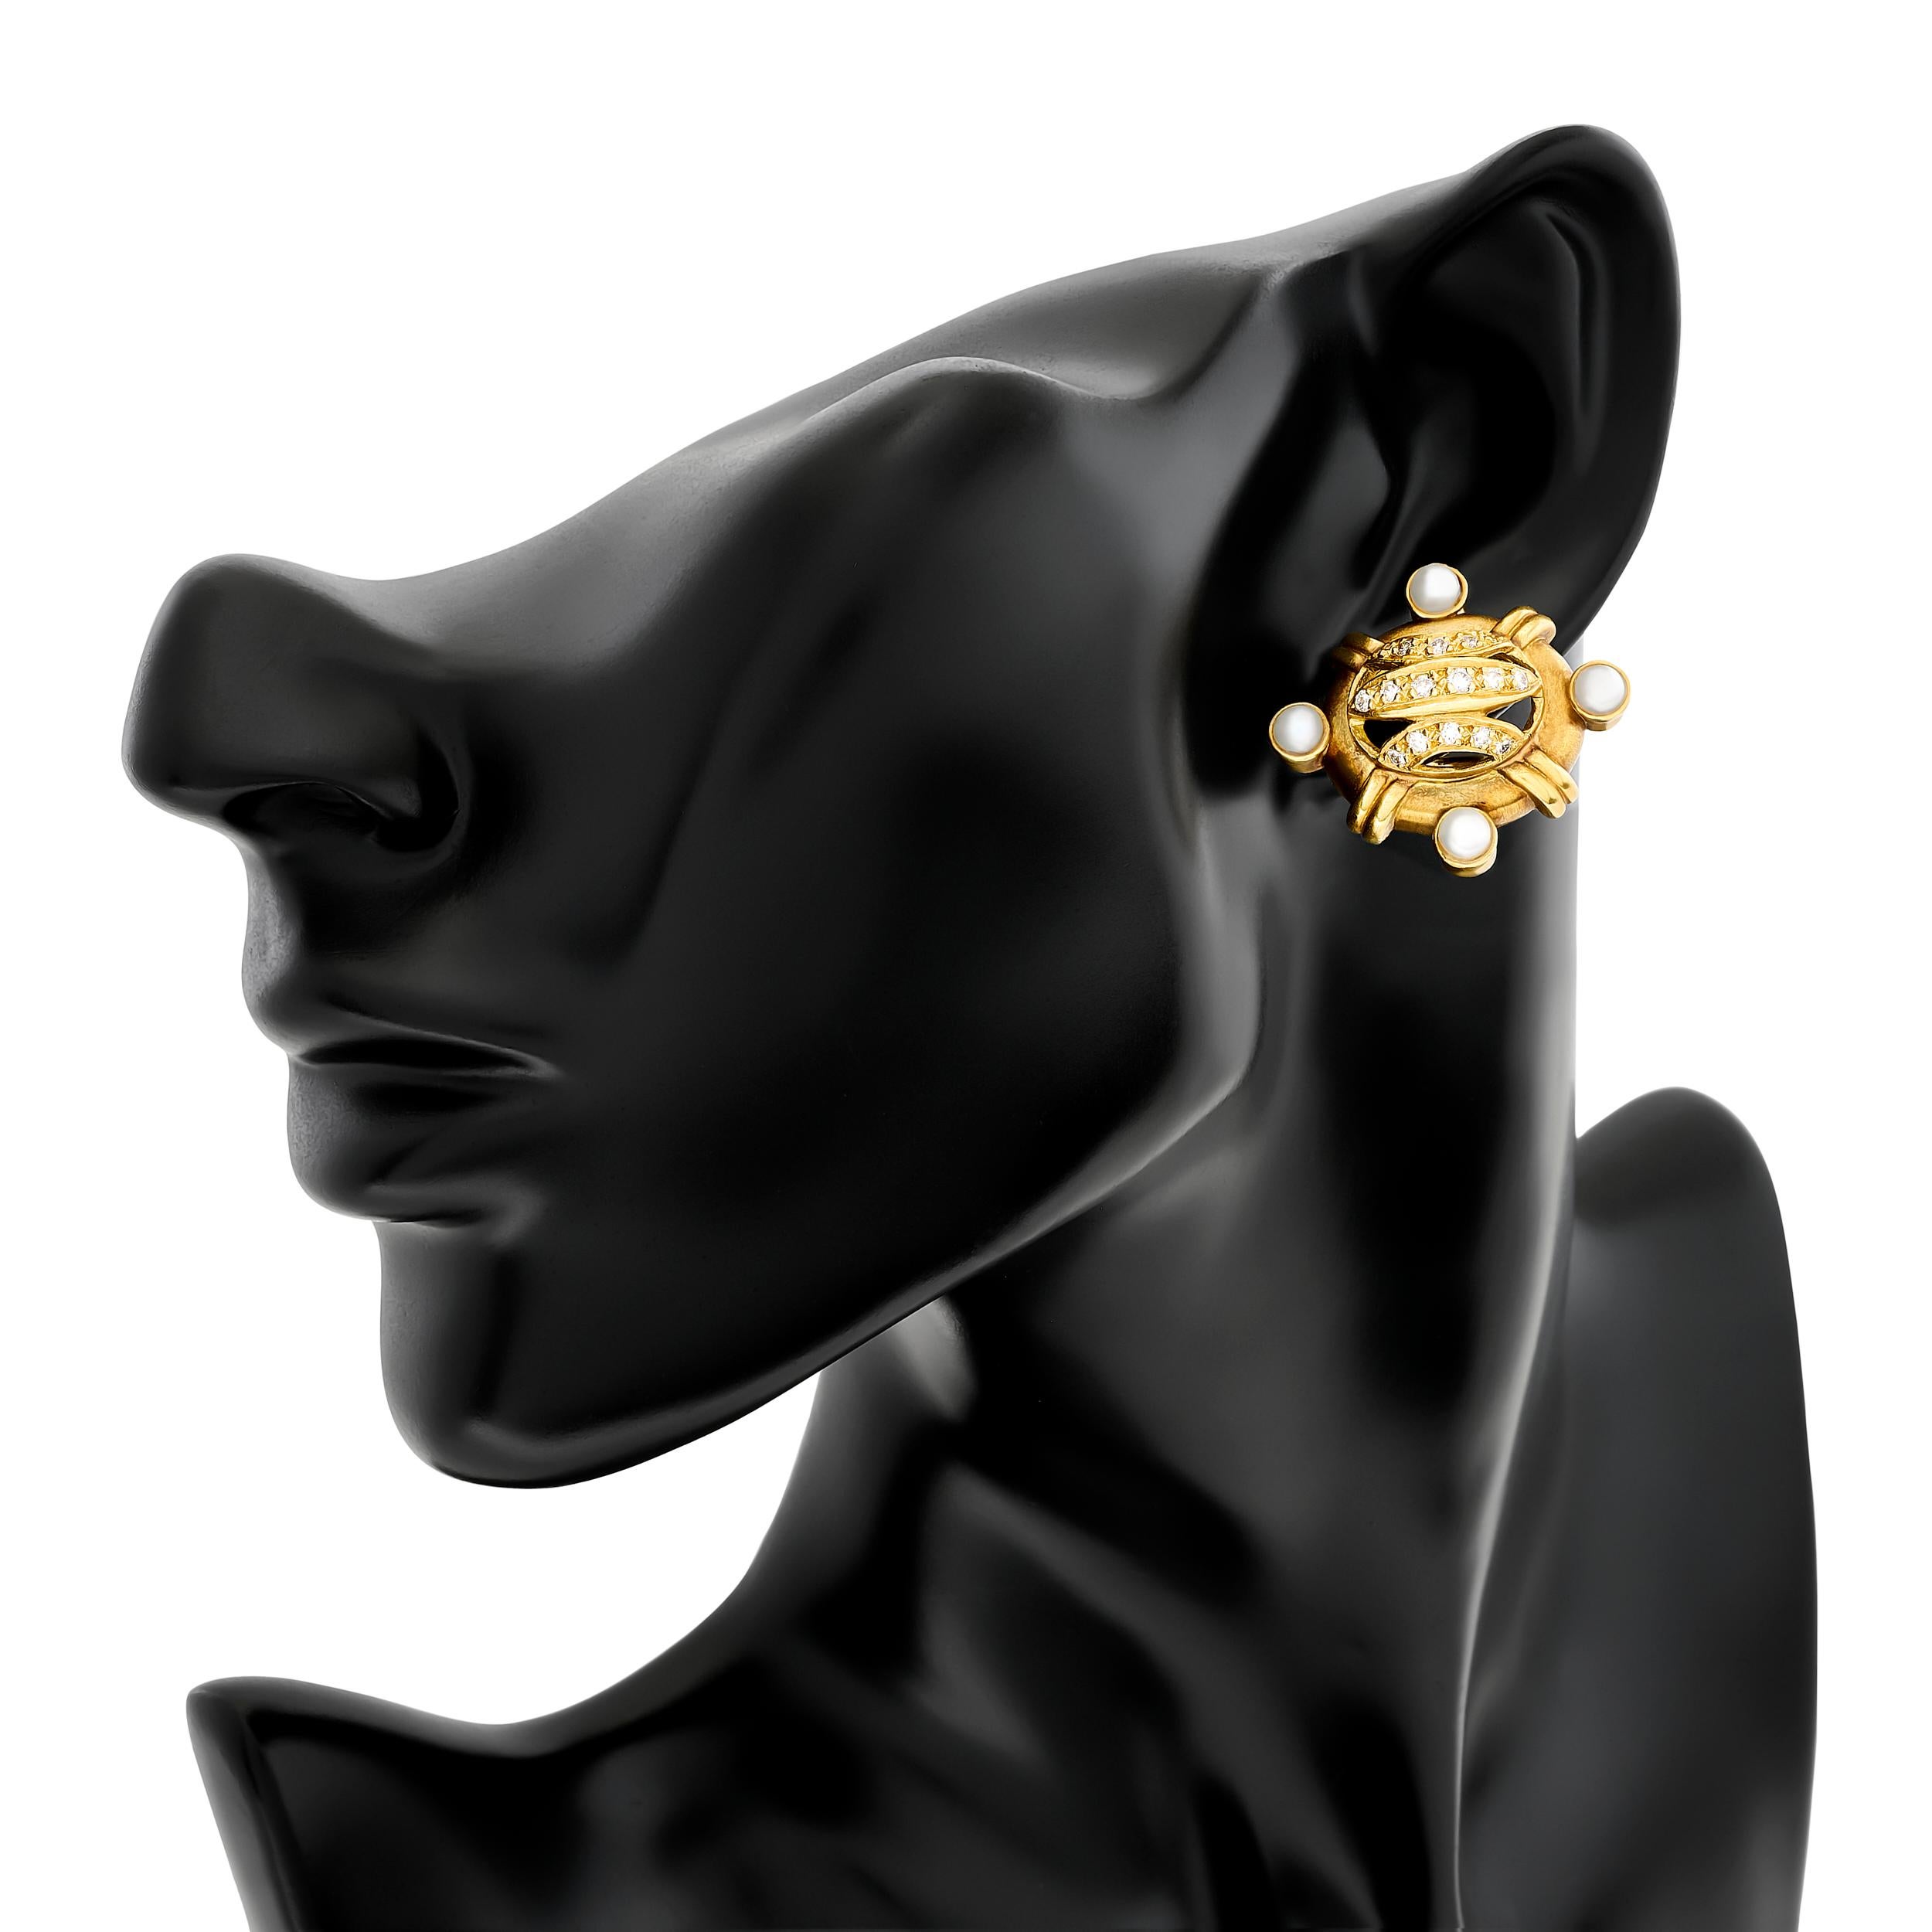 Adoptez un design unique avec les boucles d'oreilles en or jaune de Doris Panos, qui présentent des diamants et des perles placés dans les directions cardinales.

Ces boucles d'oreilles sont ornées de 32 diamants ronds pesant environ 0,75 carat, de